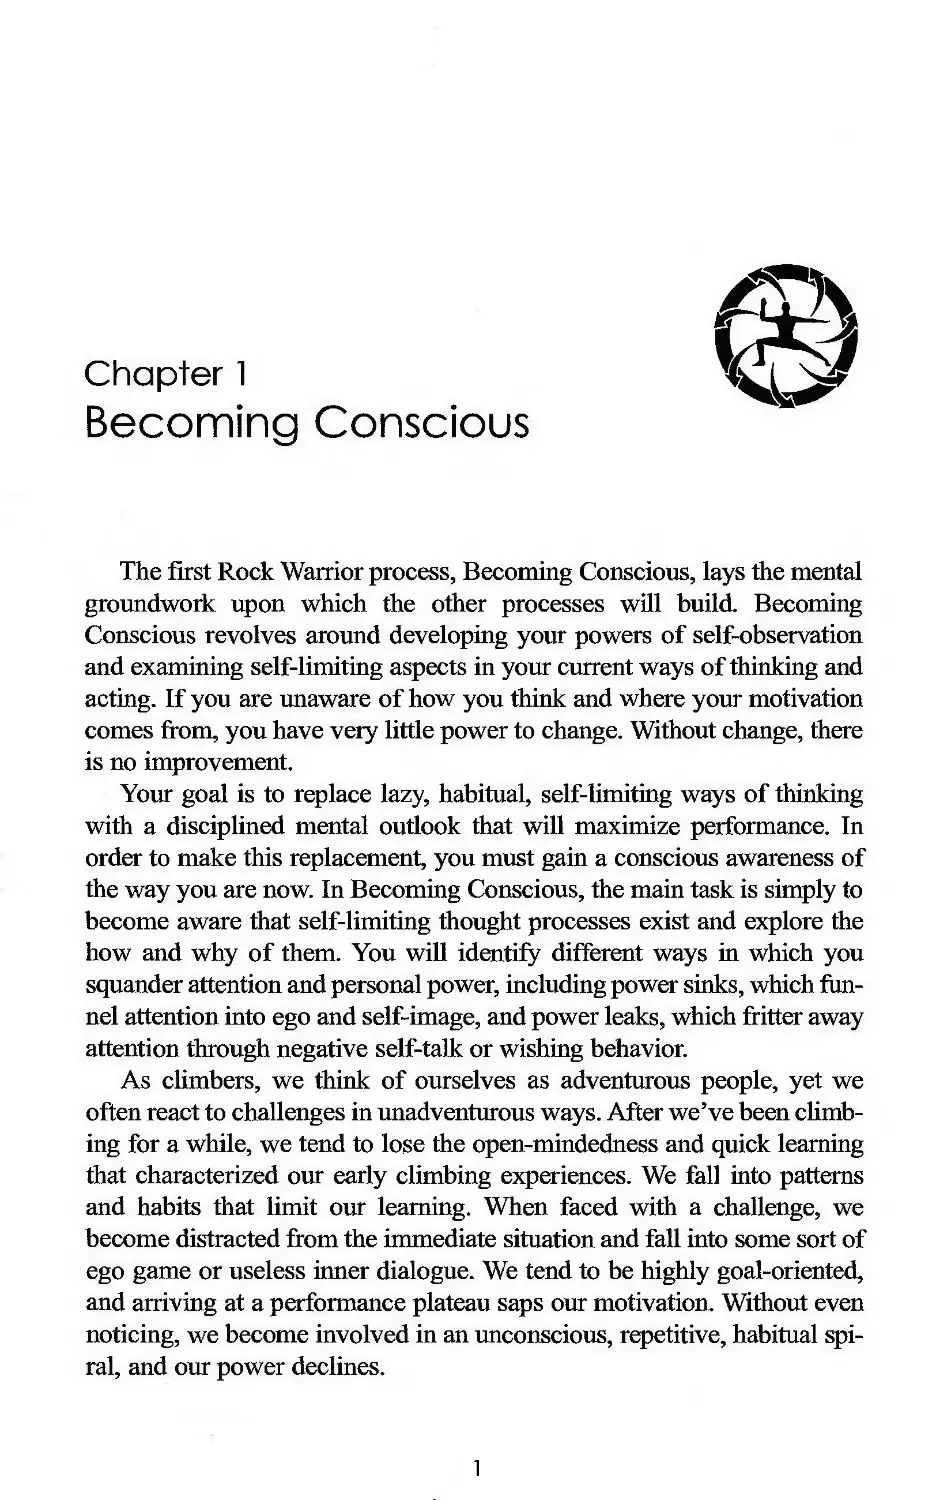 1. Becoming Conscious